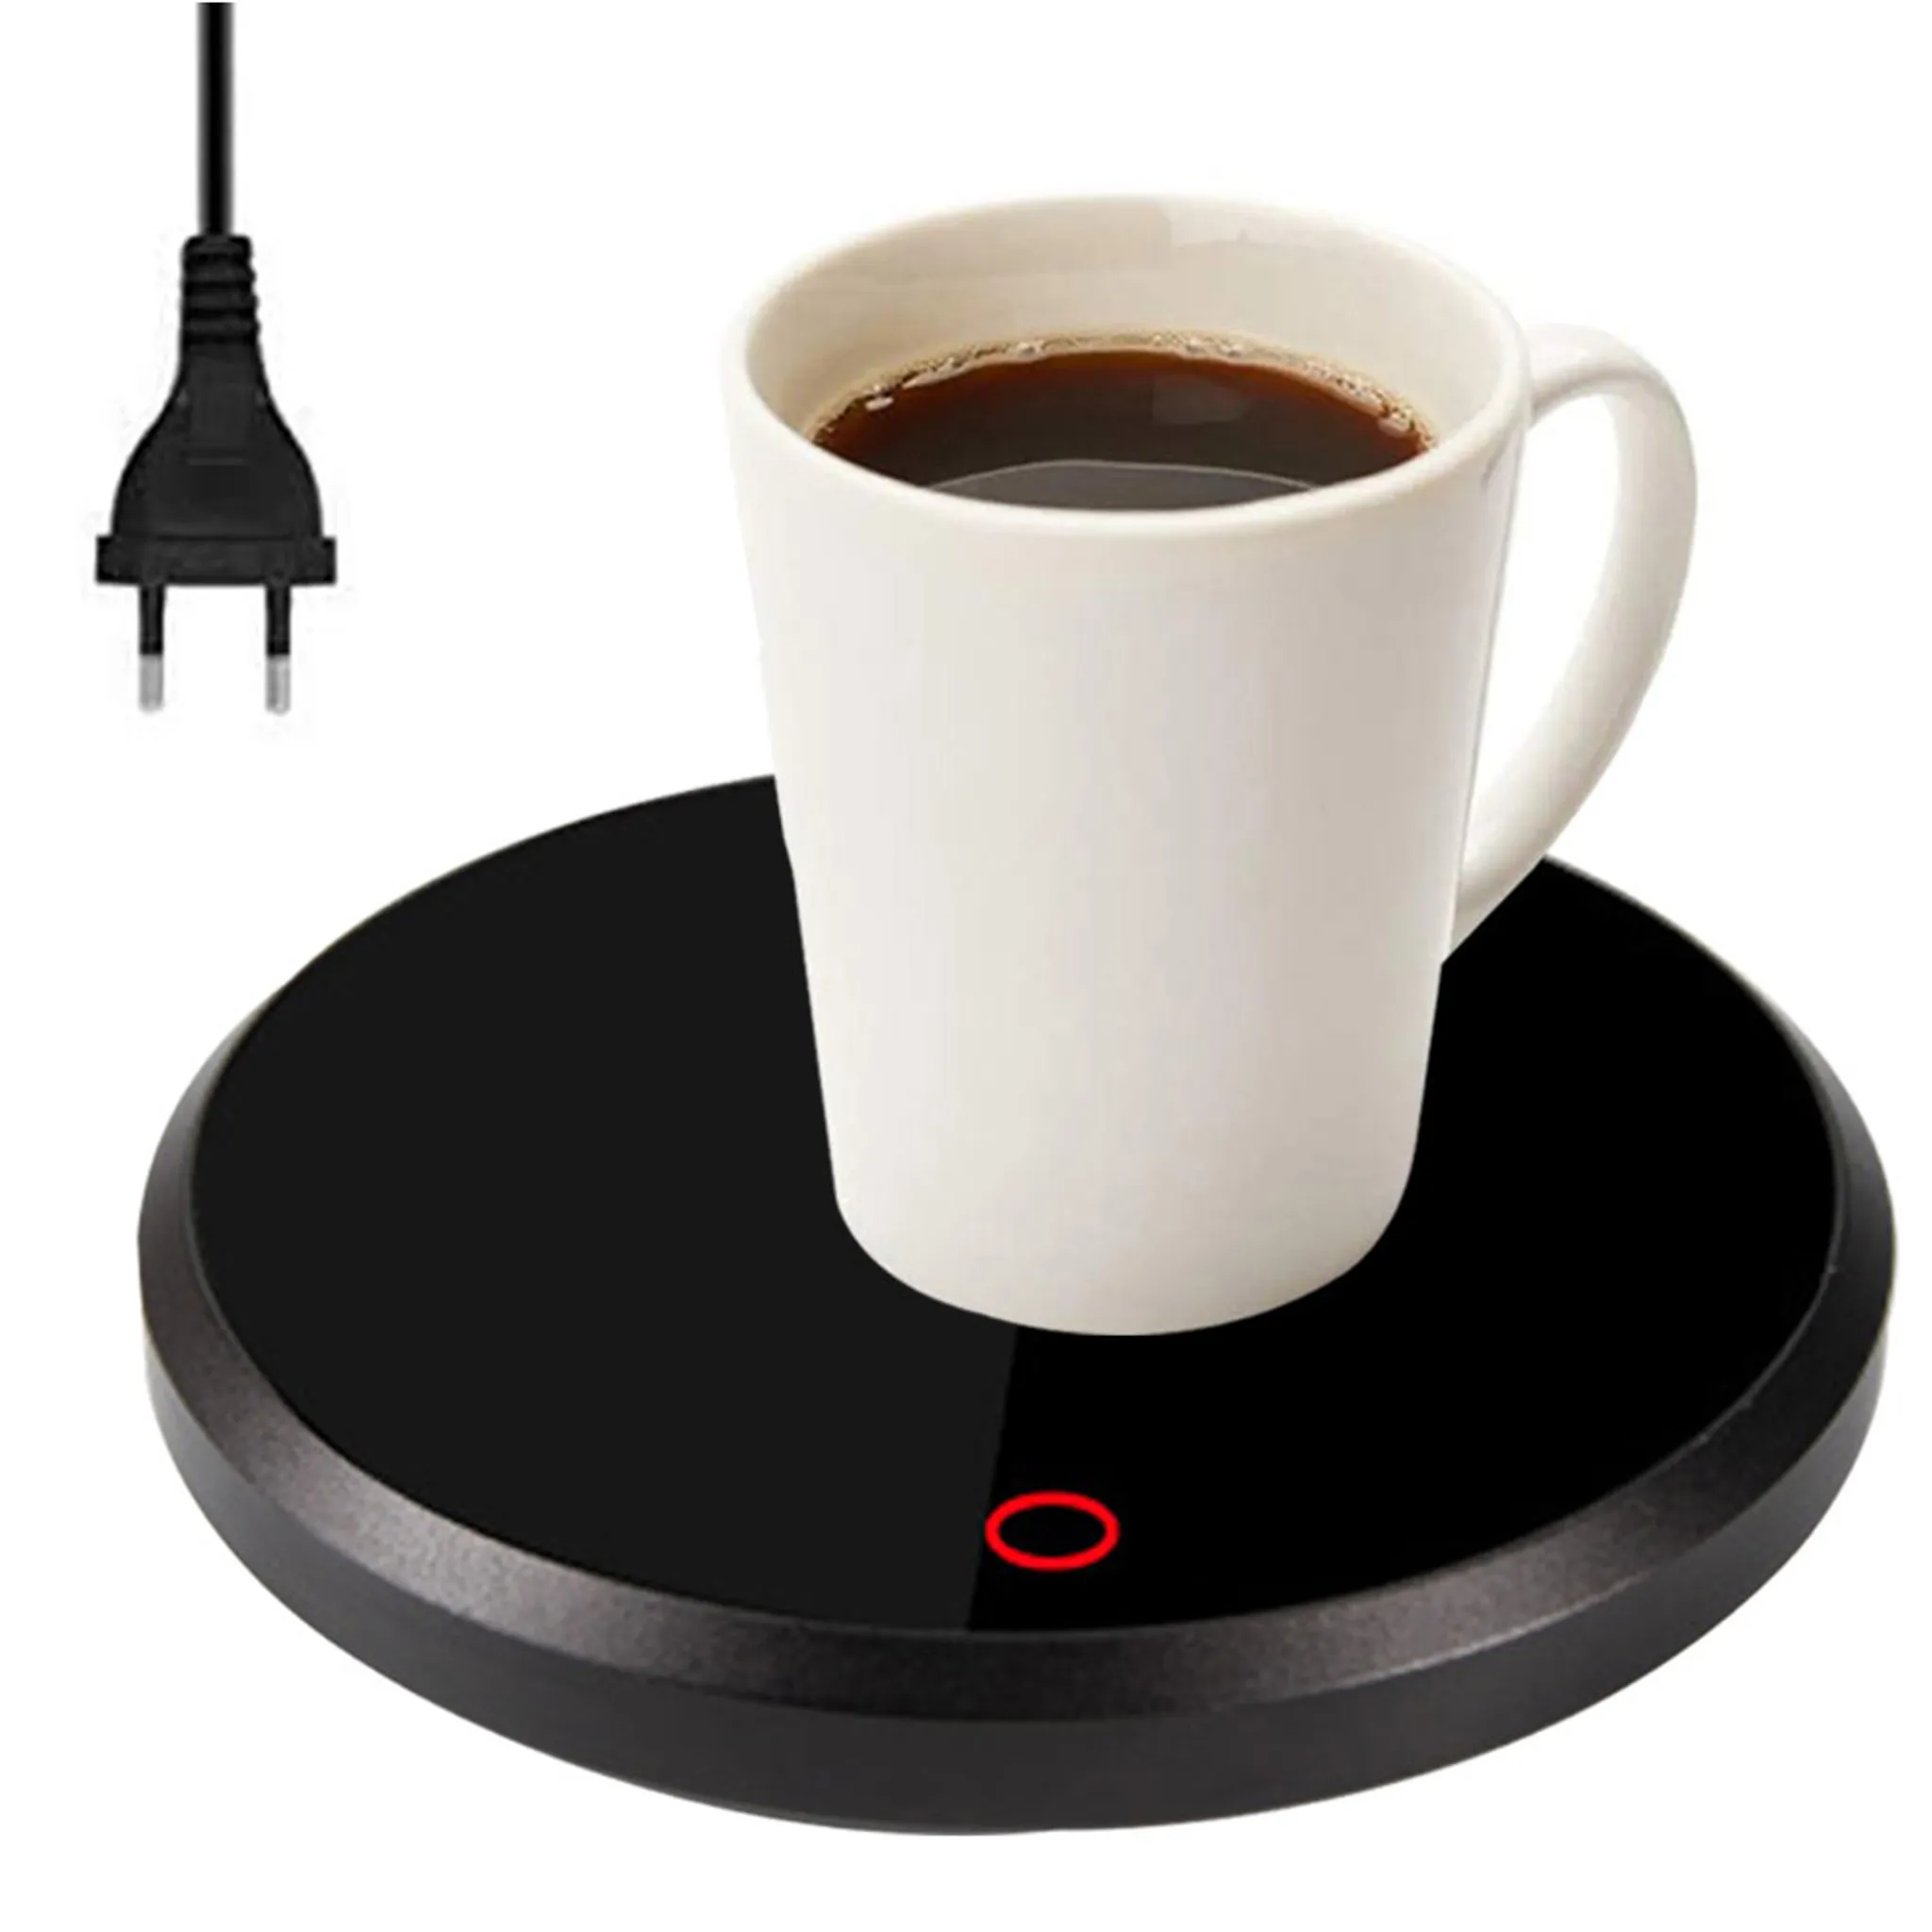 xiaohuangren Tassenwärmer USB Kaffeewärmer Getränkewärmer Isolieruntersetzer Elektrischer Untersetzer Mit DREI Temperatureinstellungen Für Kaffee Kakao Tee Milch Mit Abschaltautomatik 